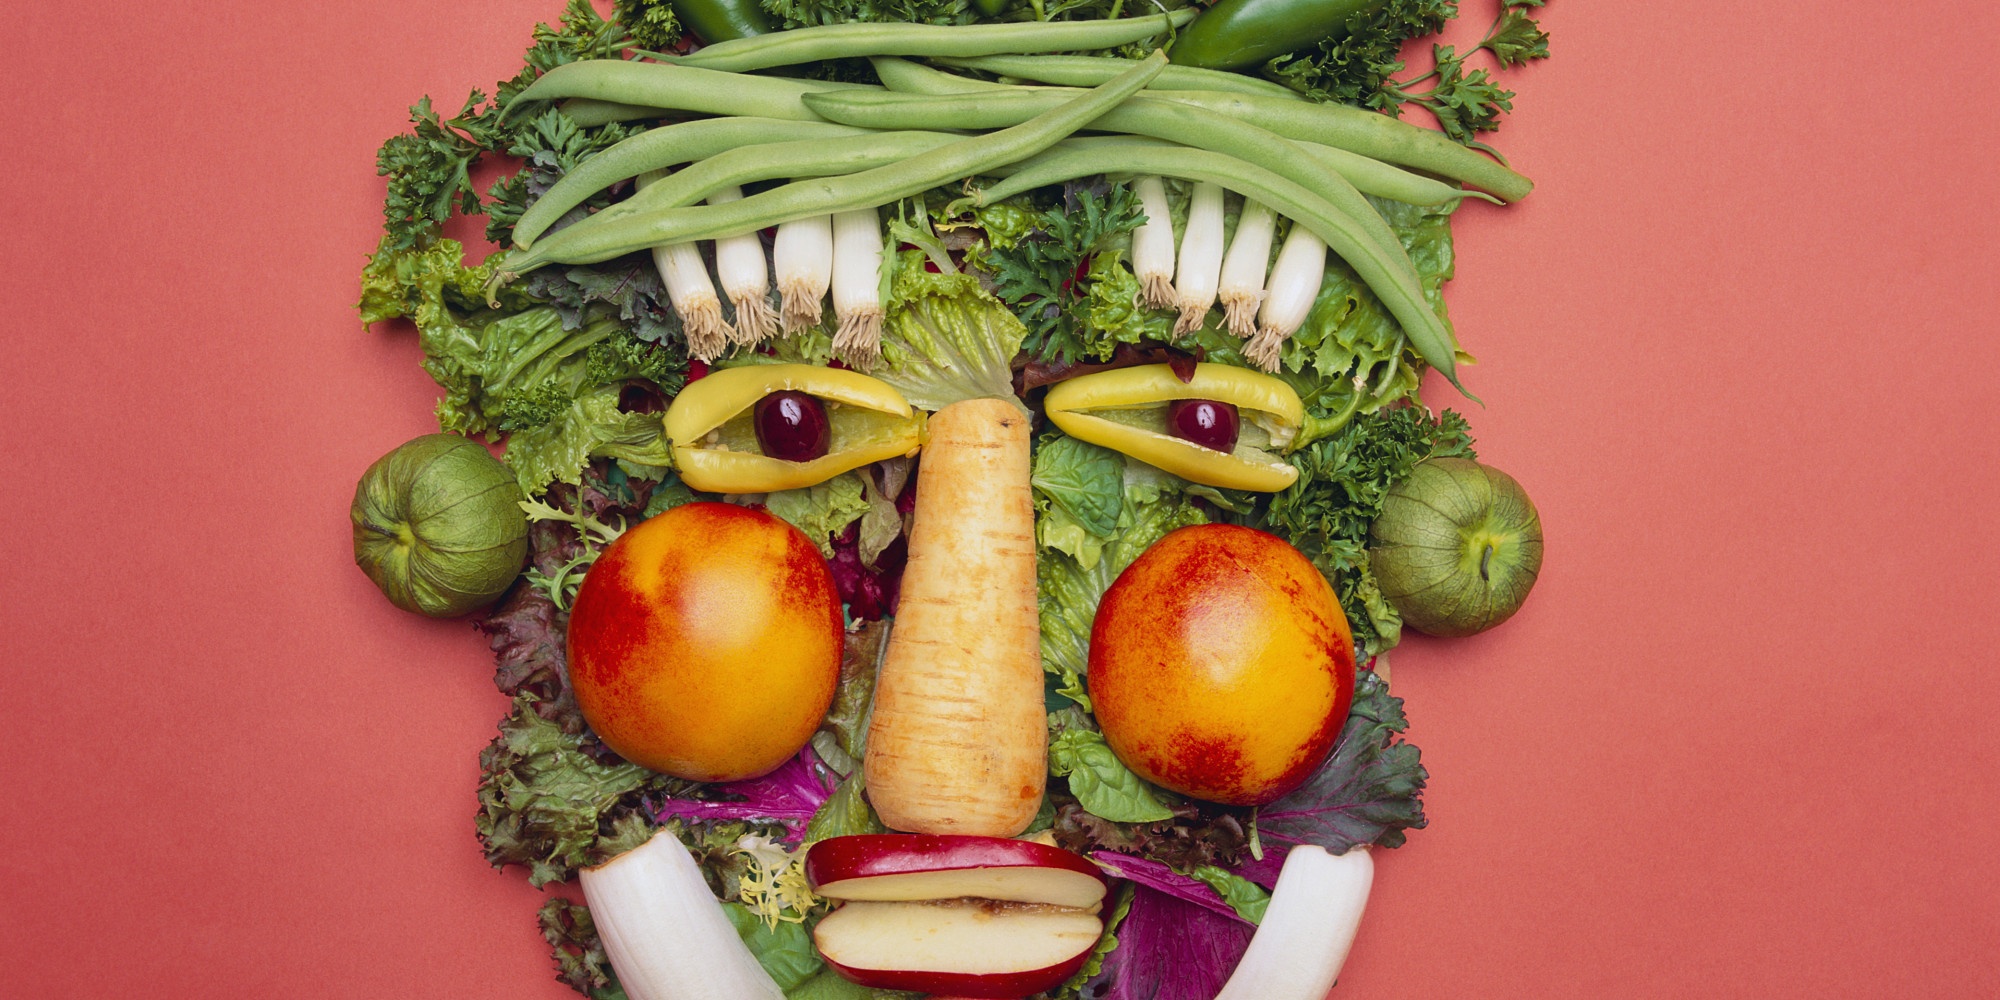 Vegetáriánus étrendre való átálláson gondolkodik? Nézze meg ezeket a könyveket